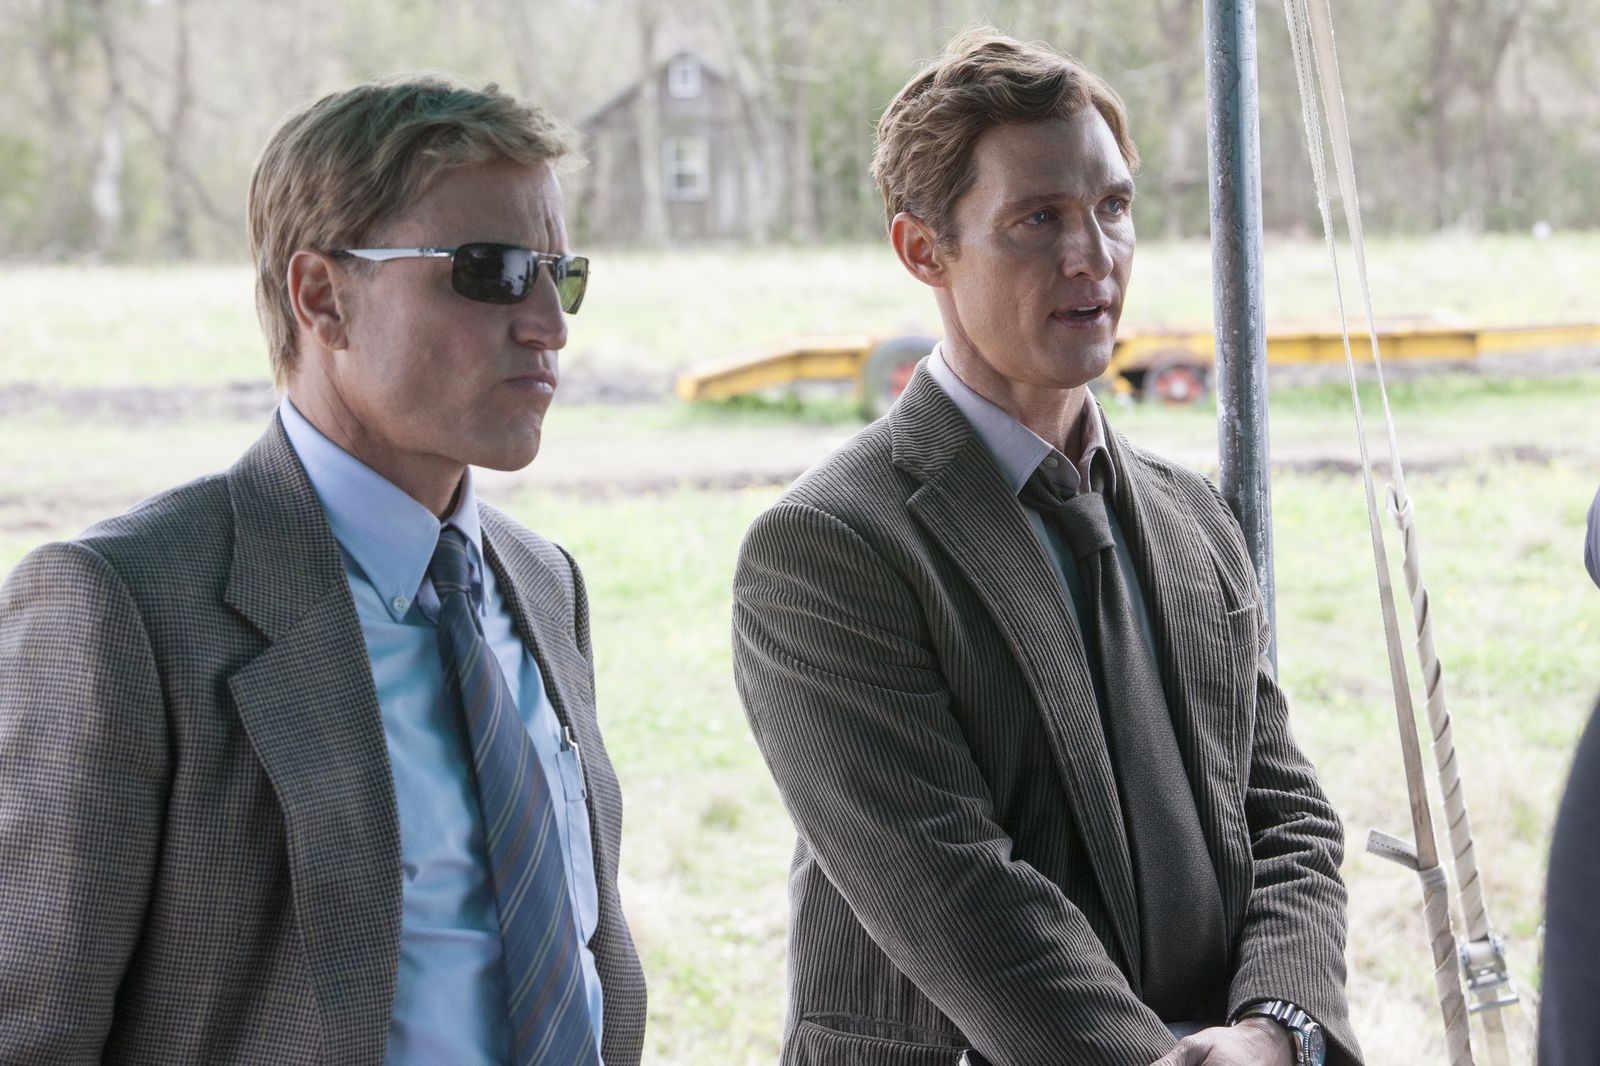 La primera temporada de la serie policial se lanzó en 2014, con Matthew McConaughey y Woody Harrelson en el protagónico. (HBO Max)